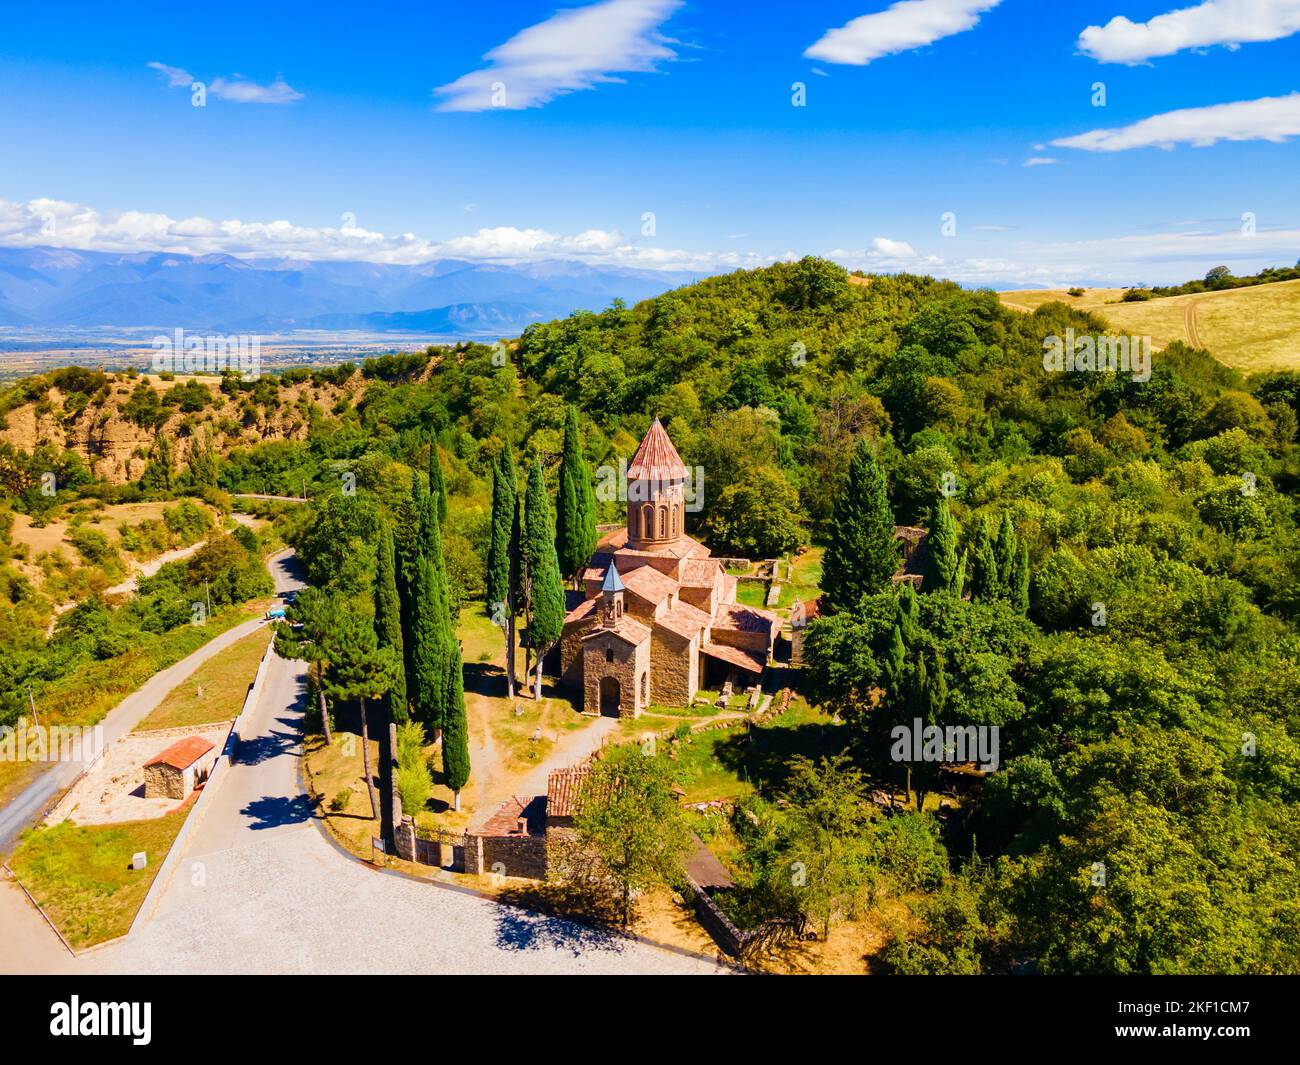 Vista panoramica aerea del complesso del Monastero di Ikalto a Kakheti. Kakheti è una regione della Georgia orientale con Telavi come capitale. Foto Stock